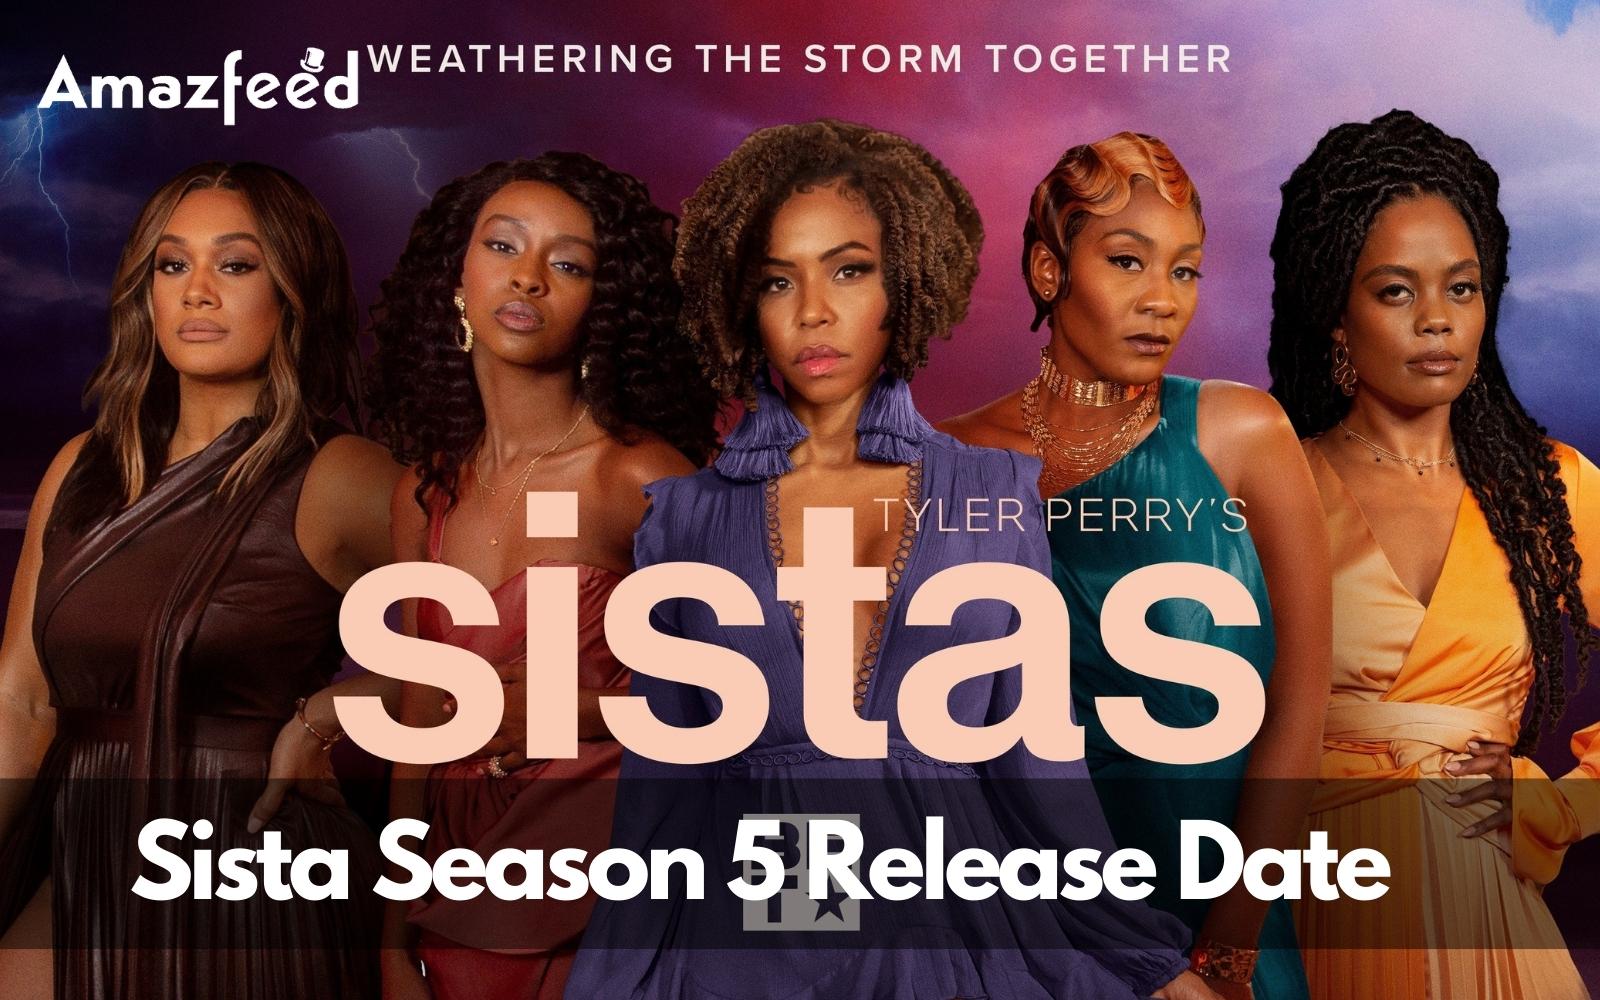 Sista season 5 release date